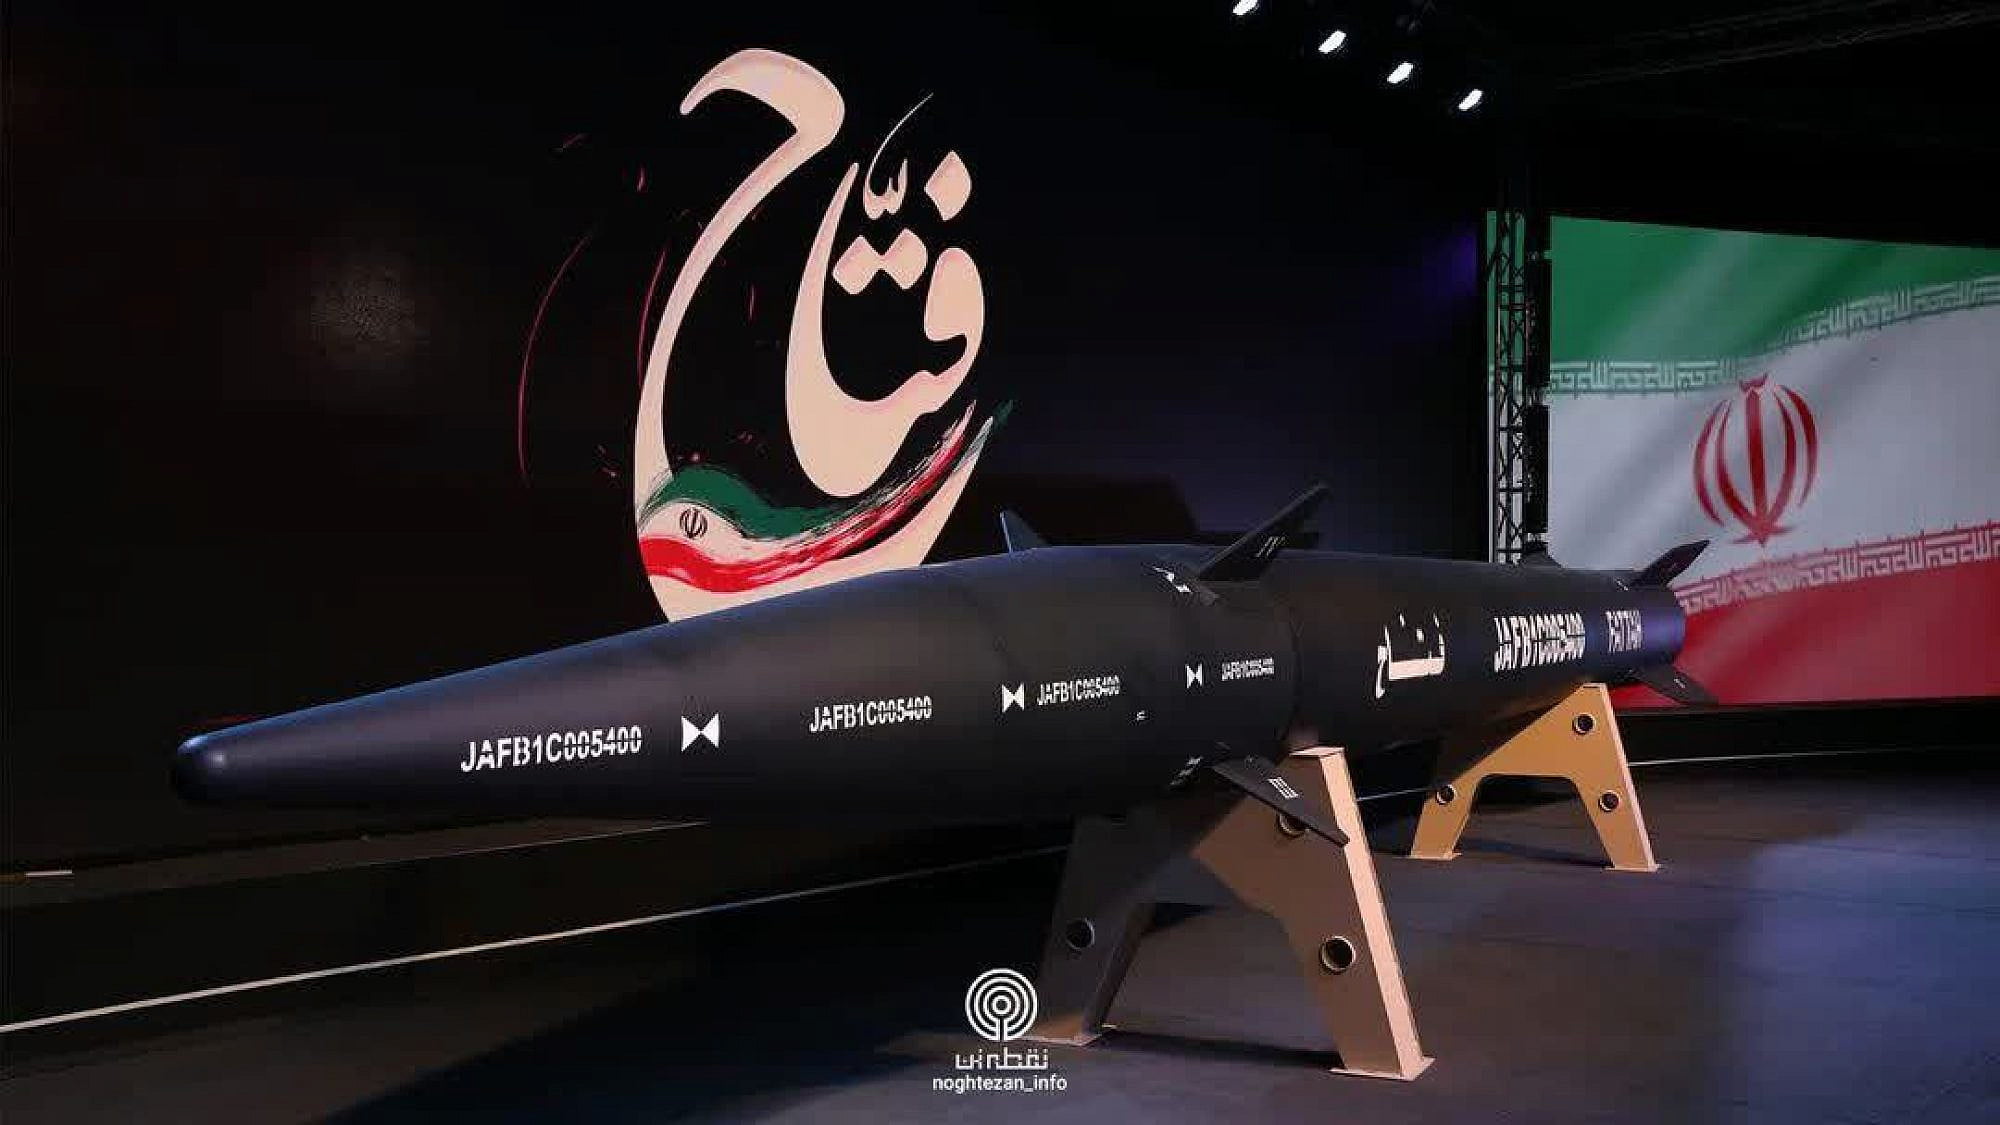 Le nouveau missile hypersonique iranien serait une menace pour Israël